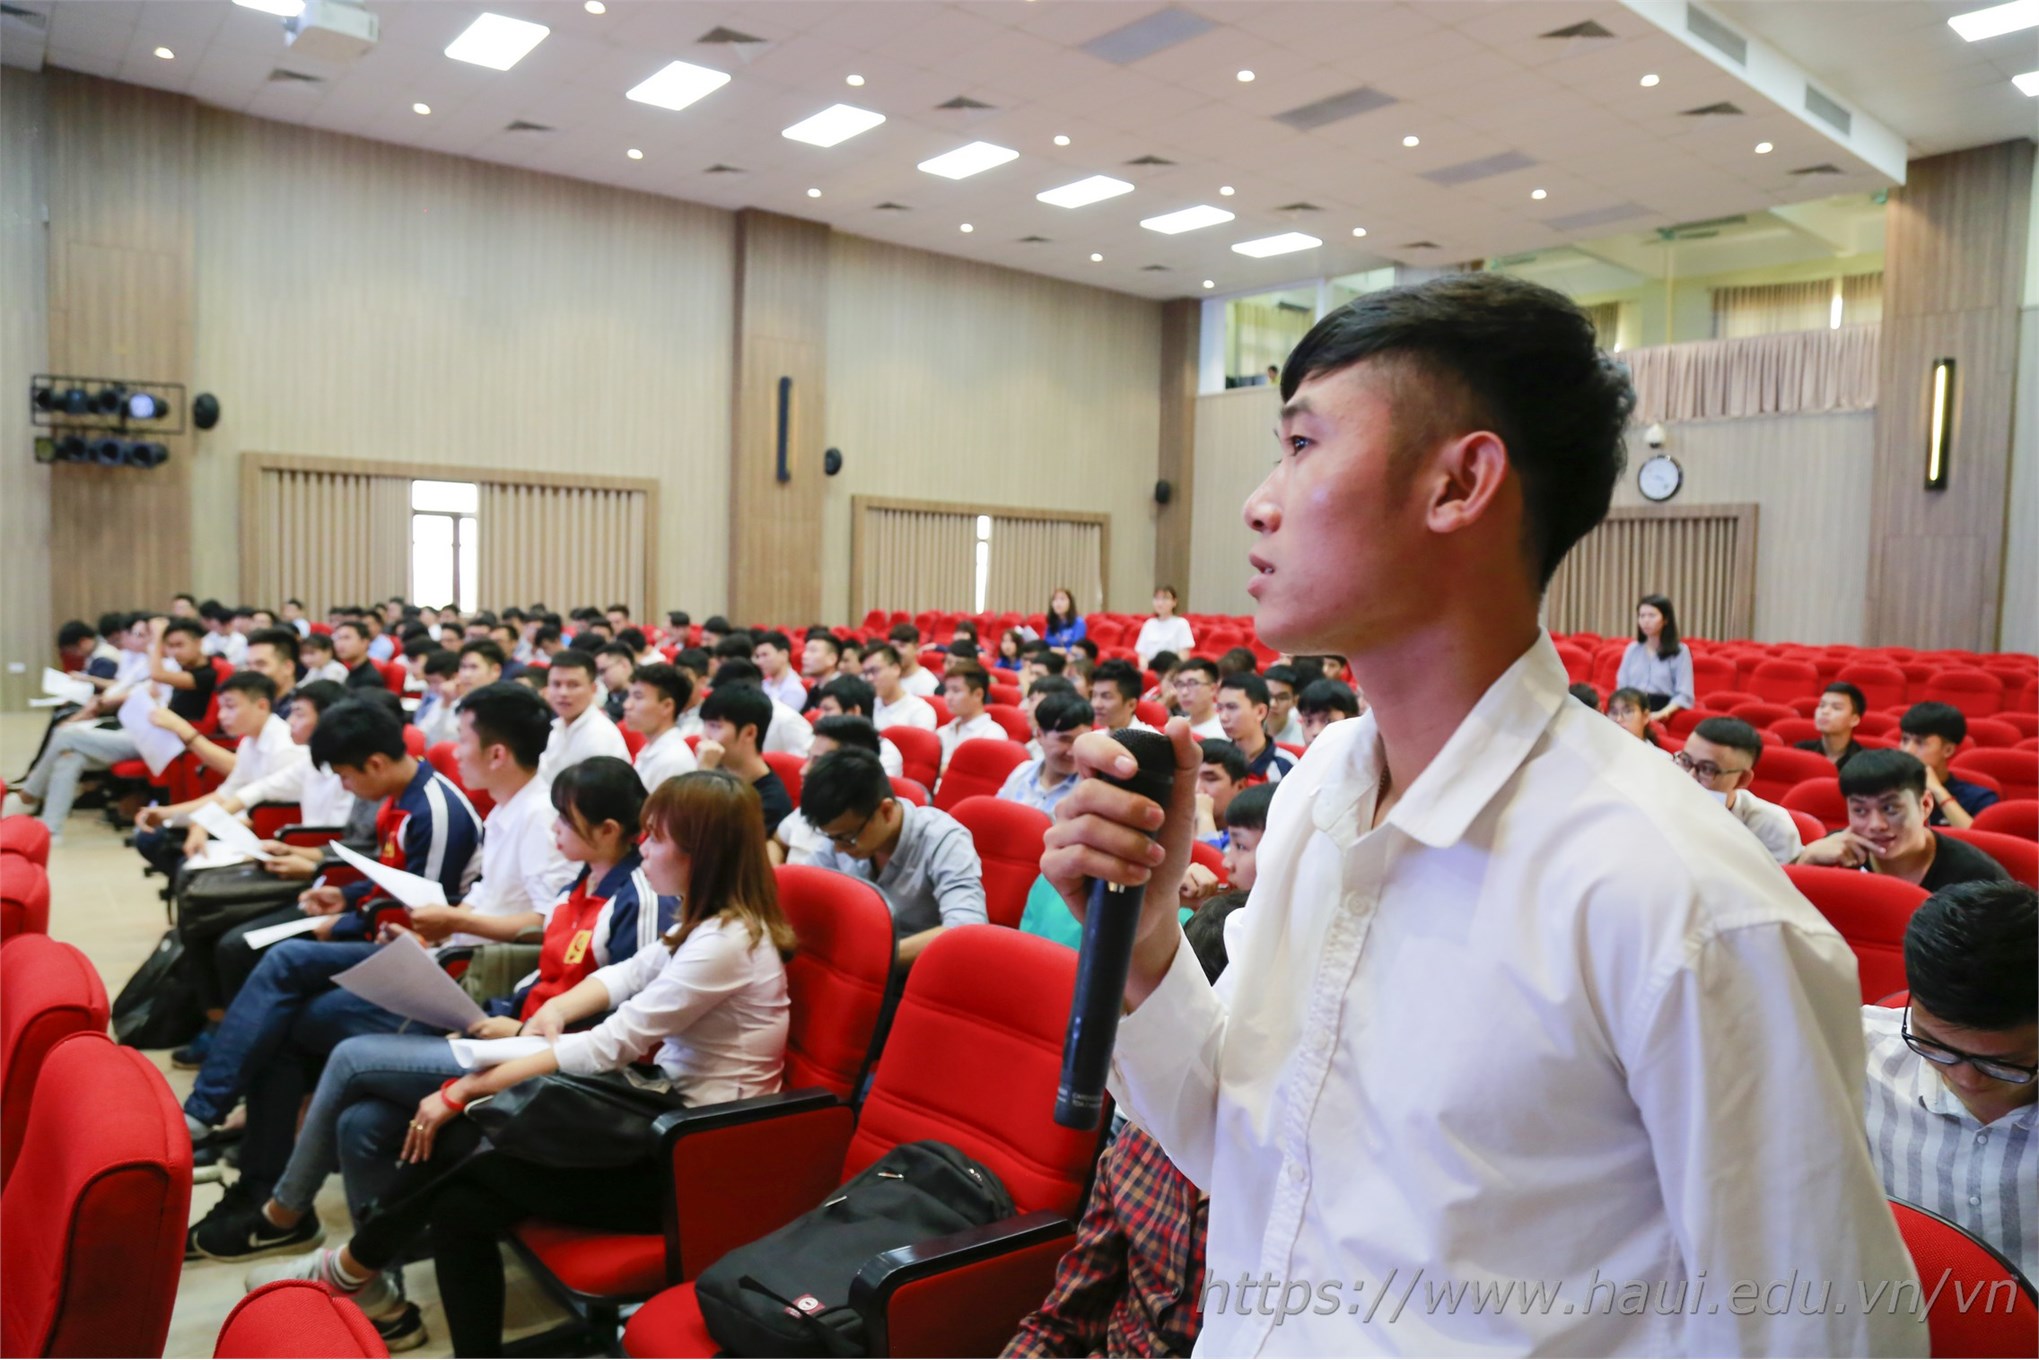 Cơ hội việc làm tại Công ty TNHH LG Electronics Việt Nam Hải Phòng